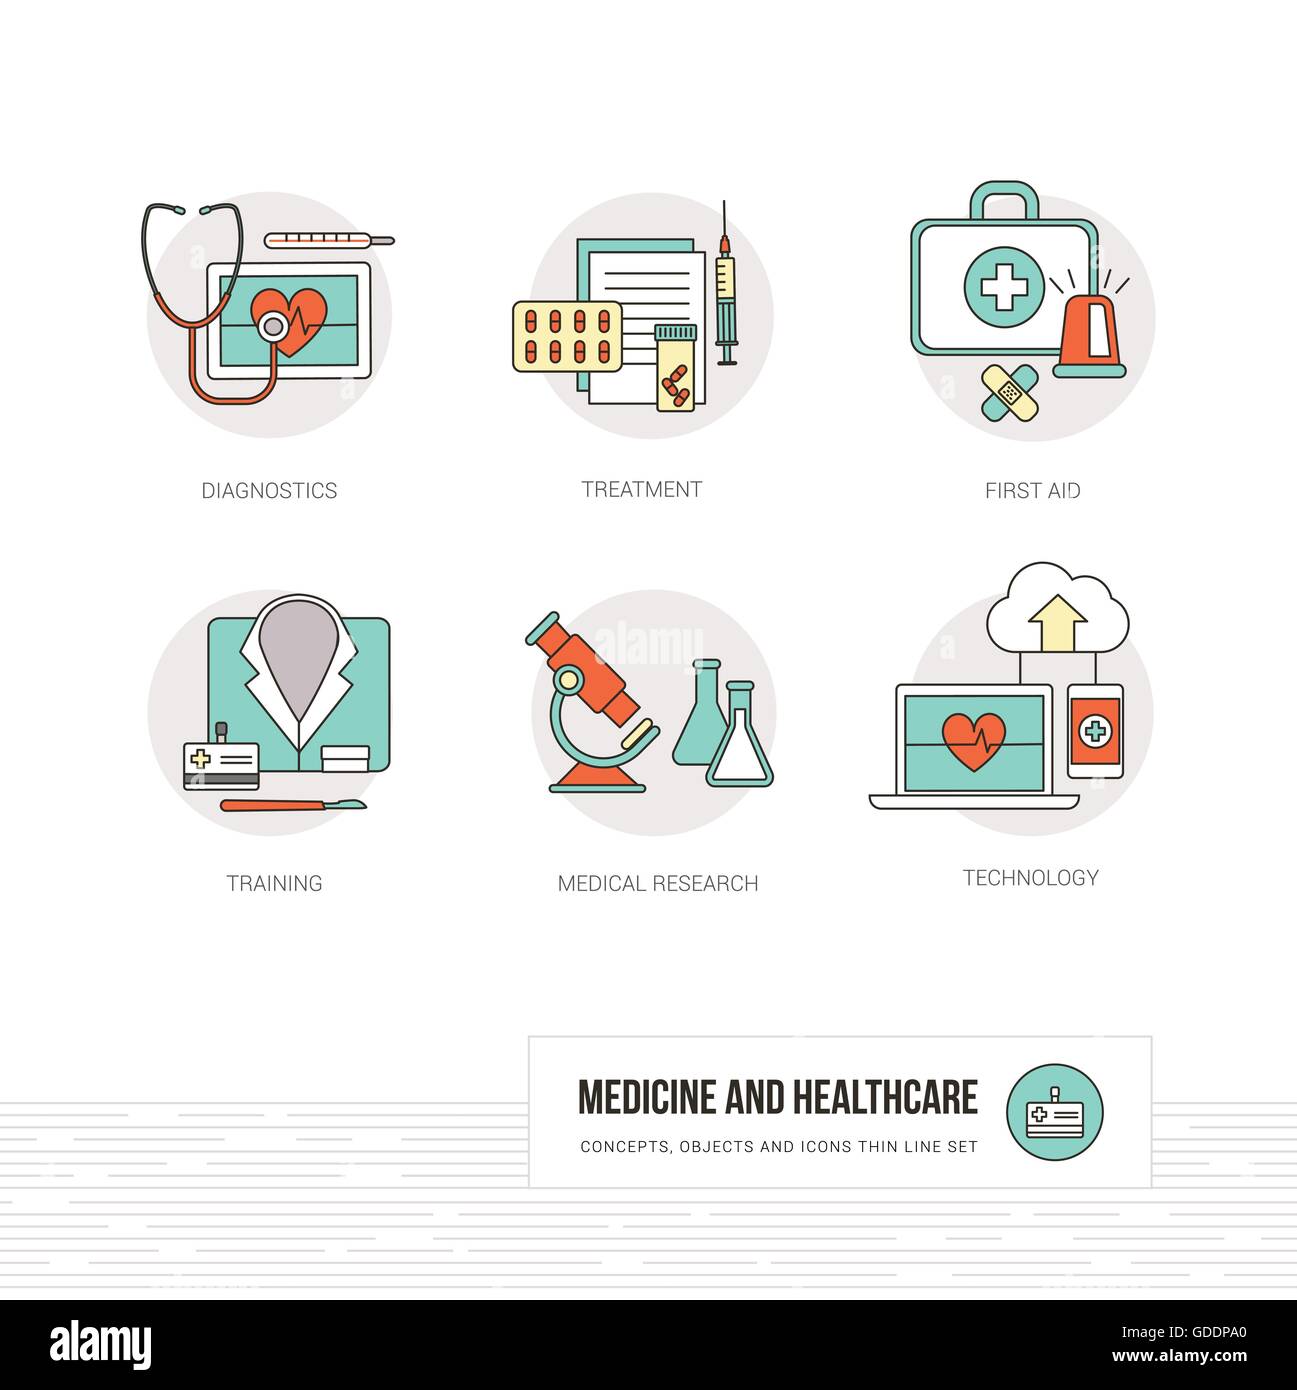 La medicina, la salud y los médicos conceptos, objetos de línea delgada y conjunto de iconos Ilustración del Vector